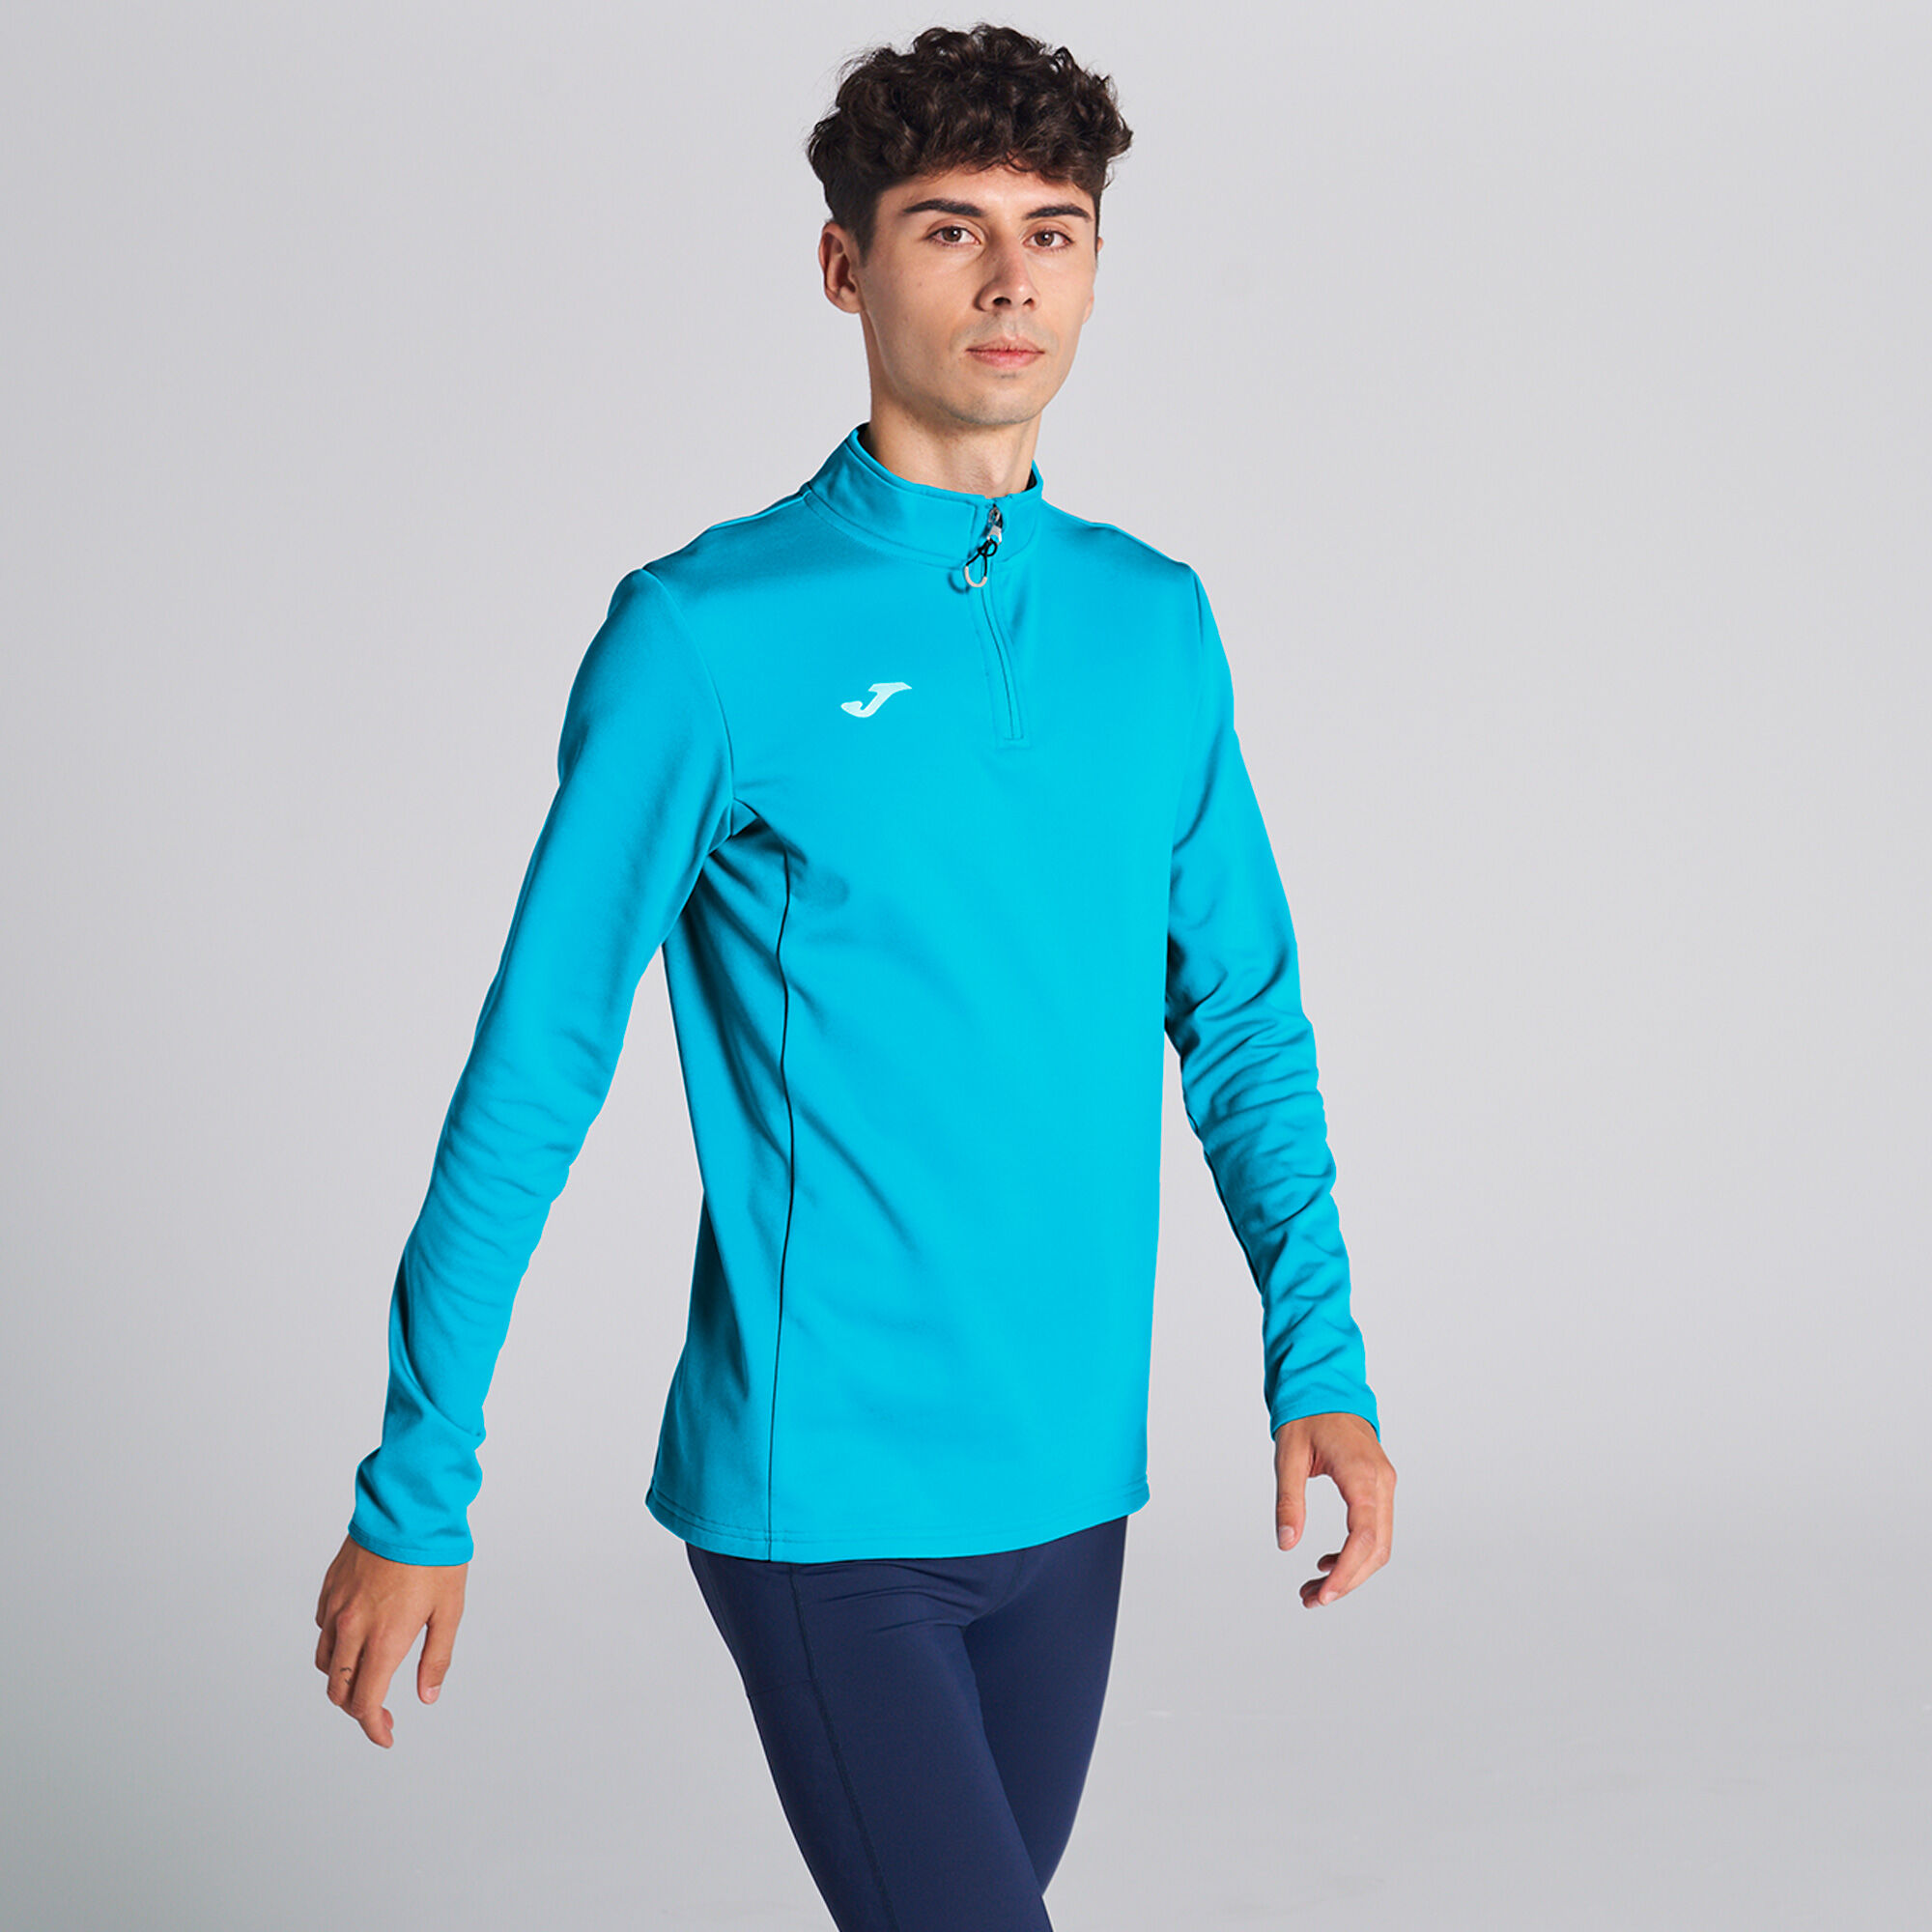 Bluza mężczyźni Running Night fluorescencyjny turkusowy